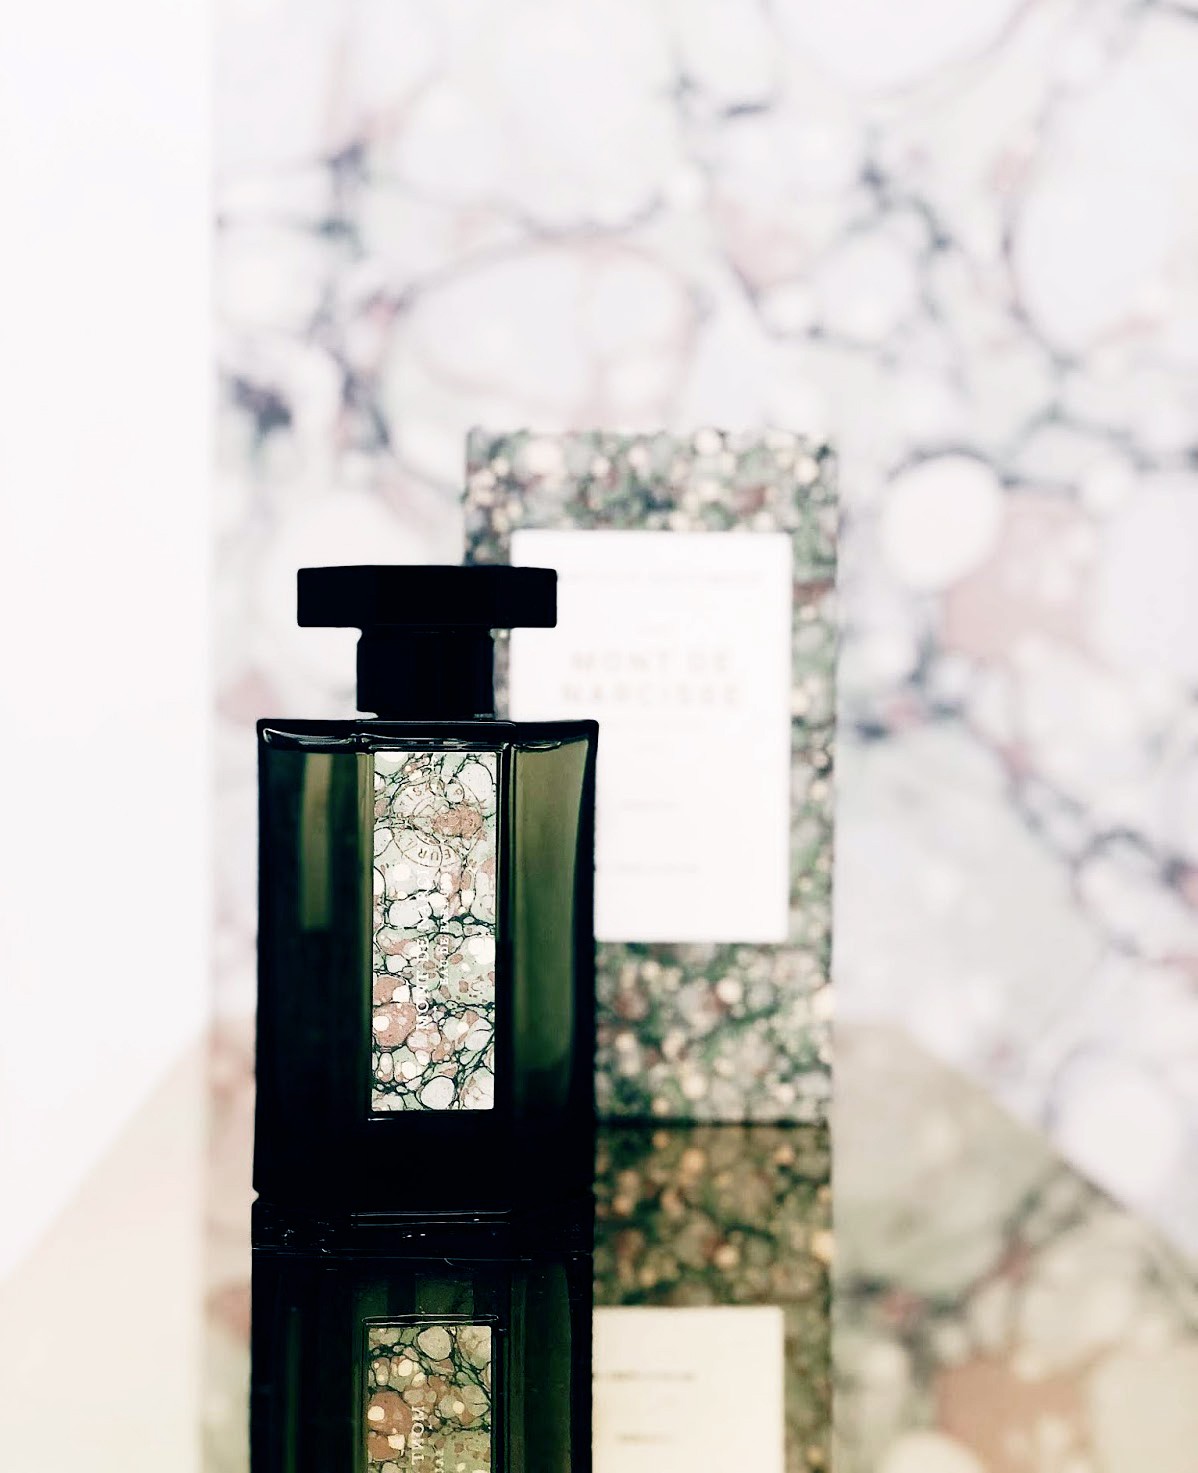 Изображение парфюма L'Artisan Parfumeur Mont de Narcisse